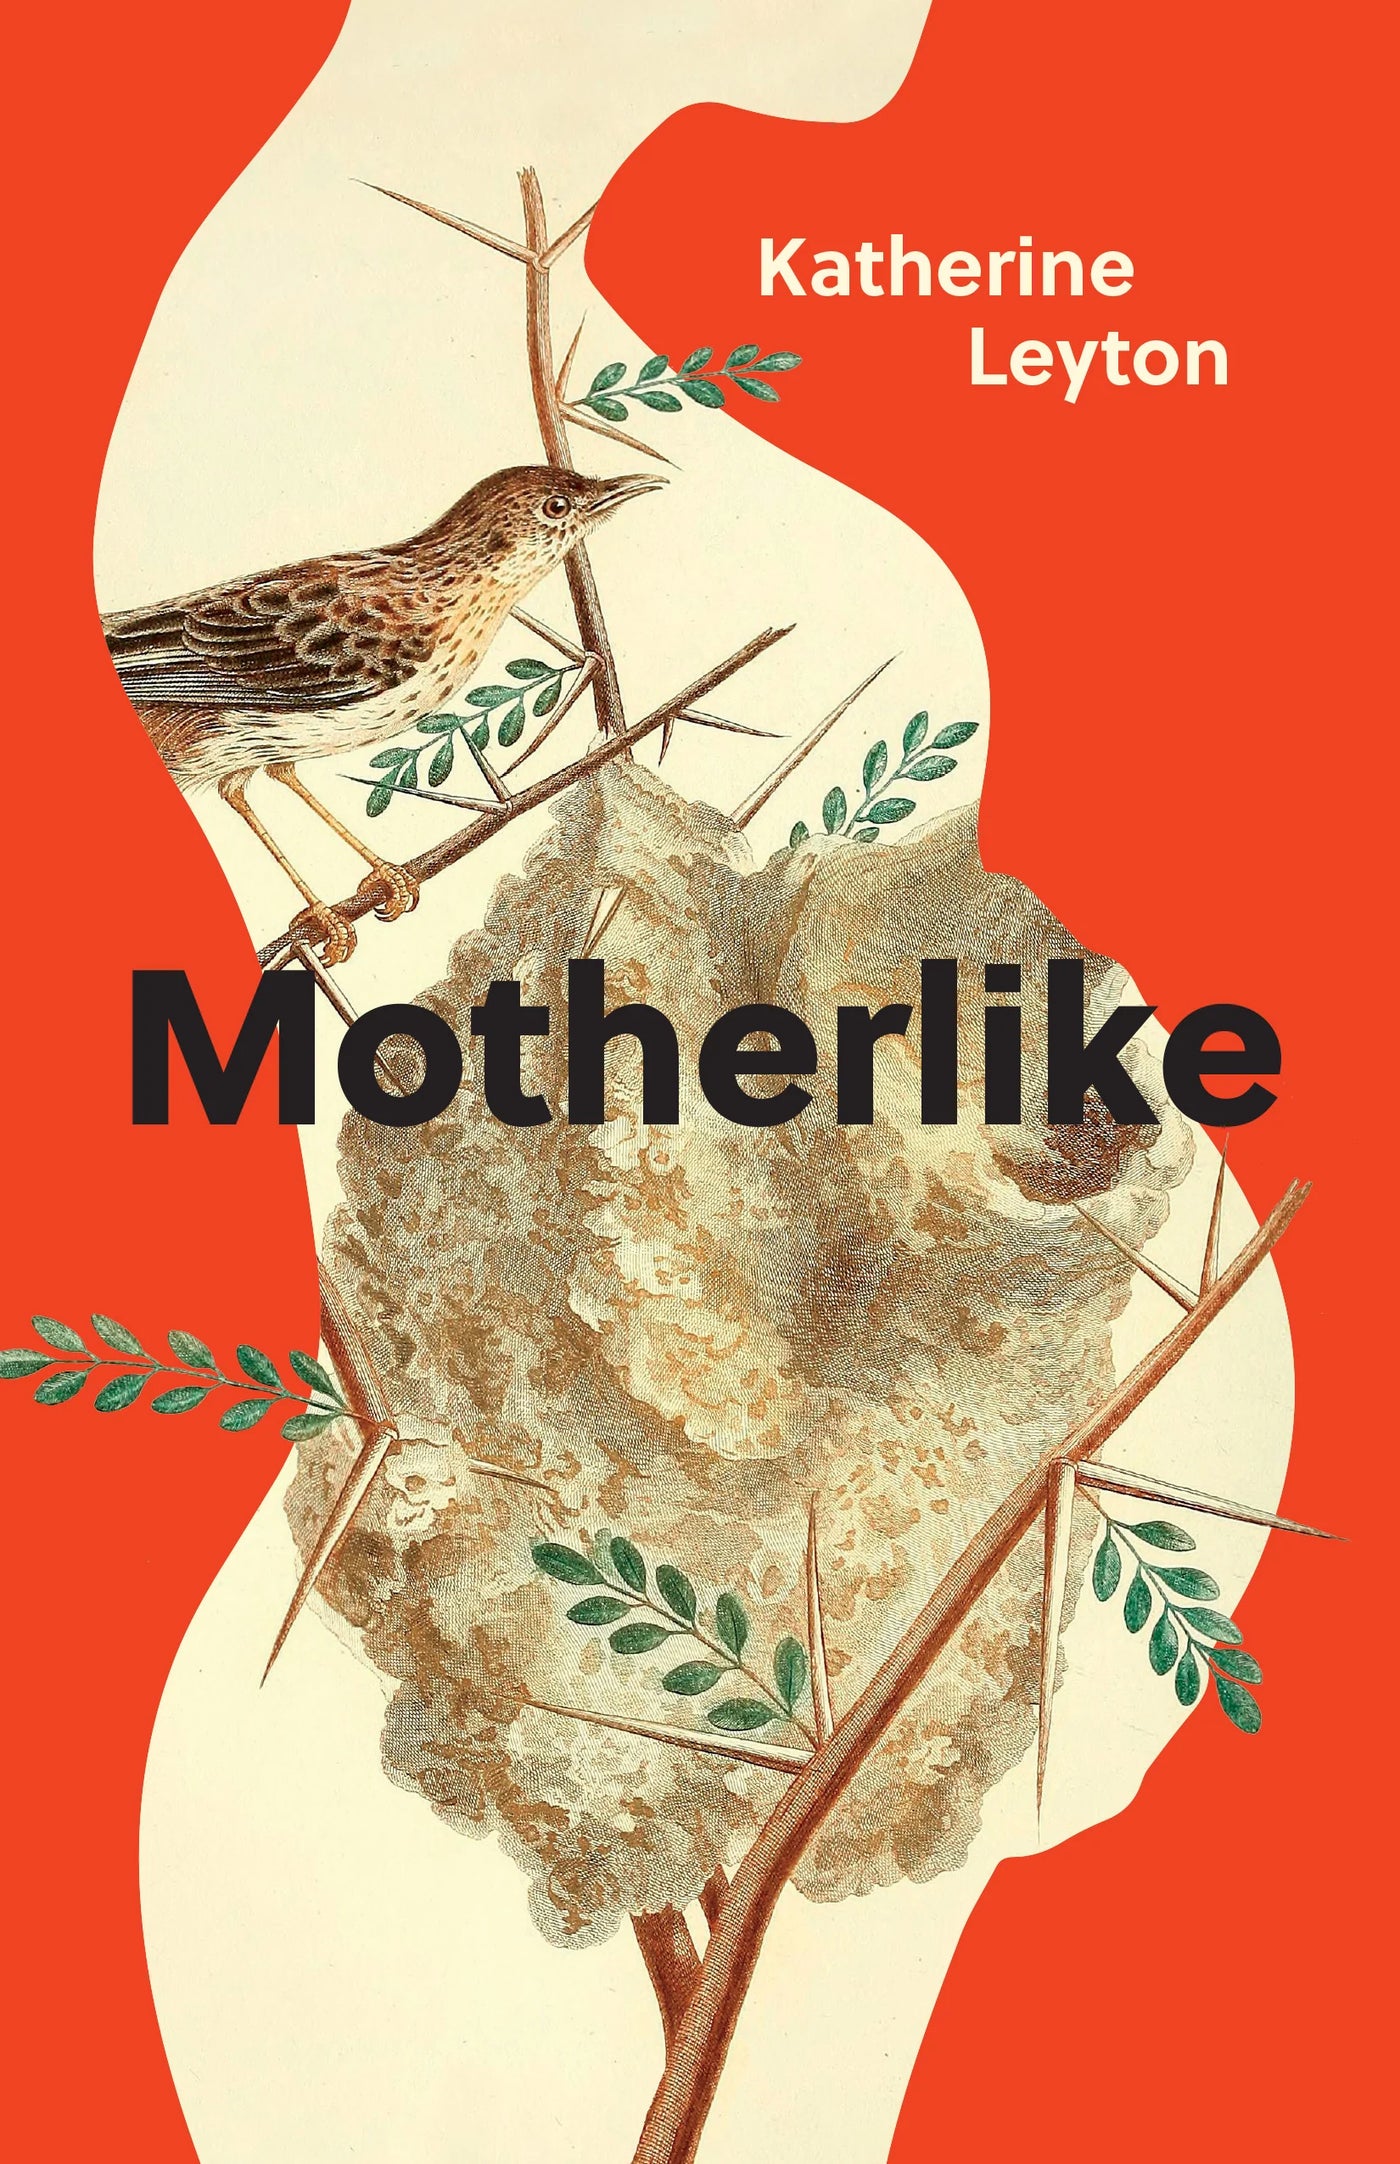 Motherlike - by Katherine Leyton